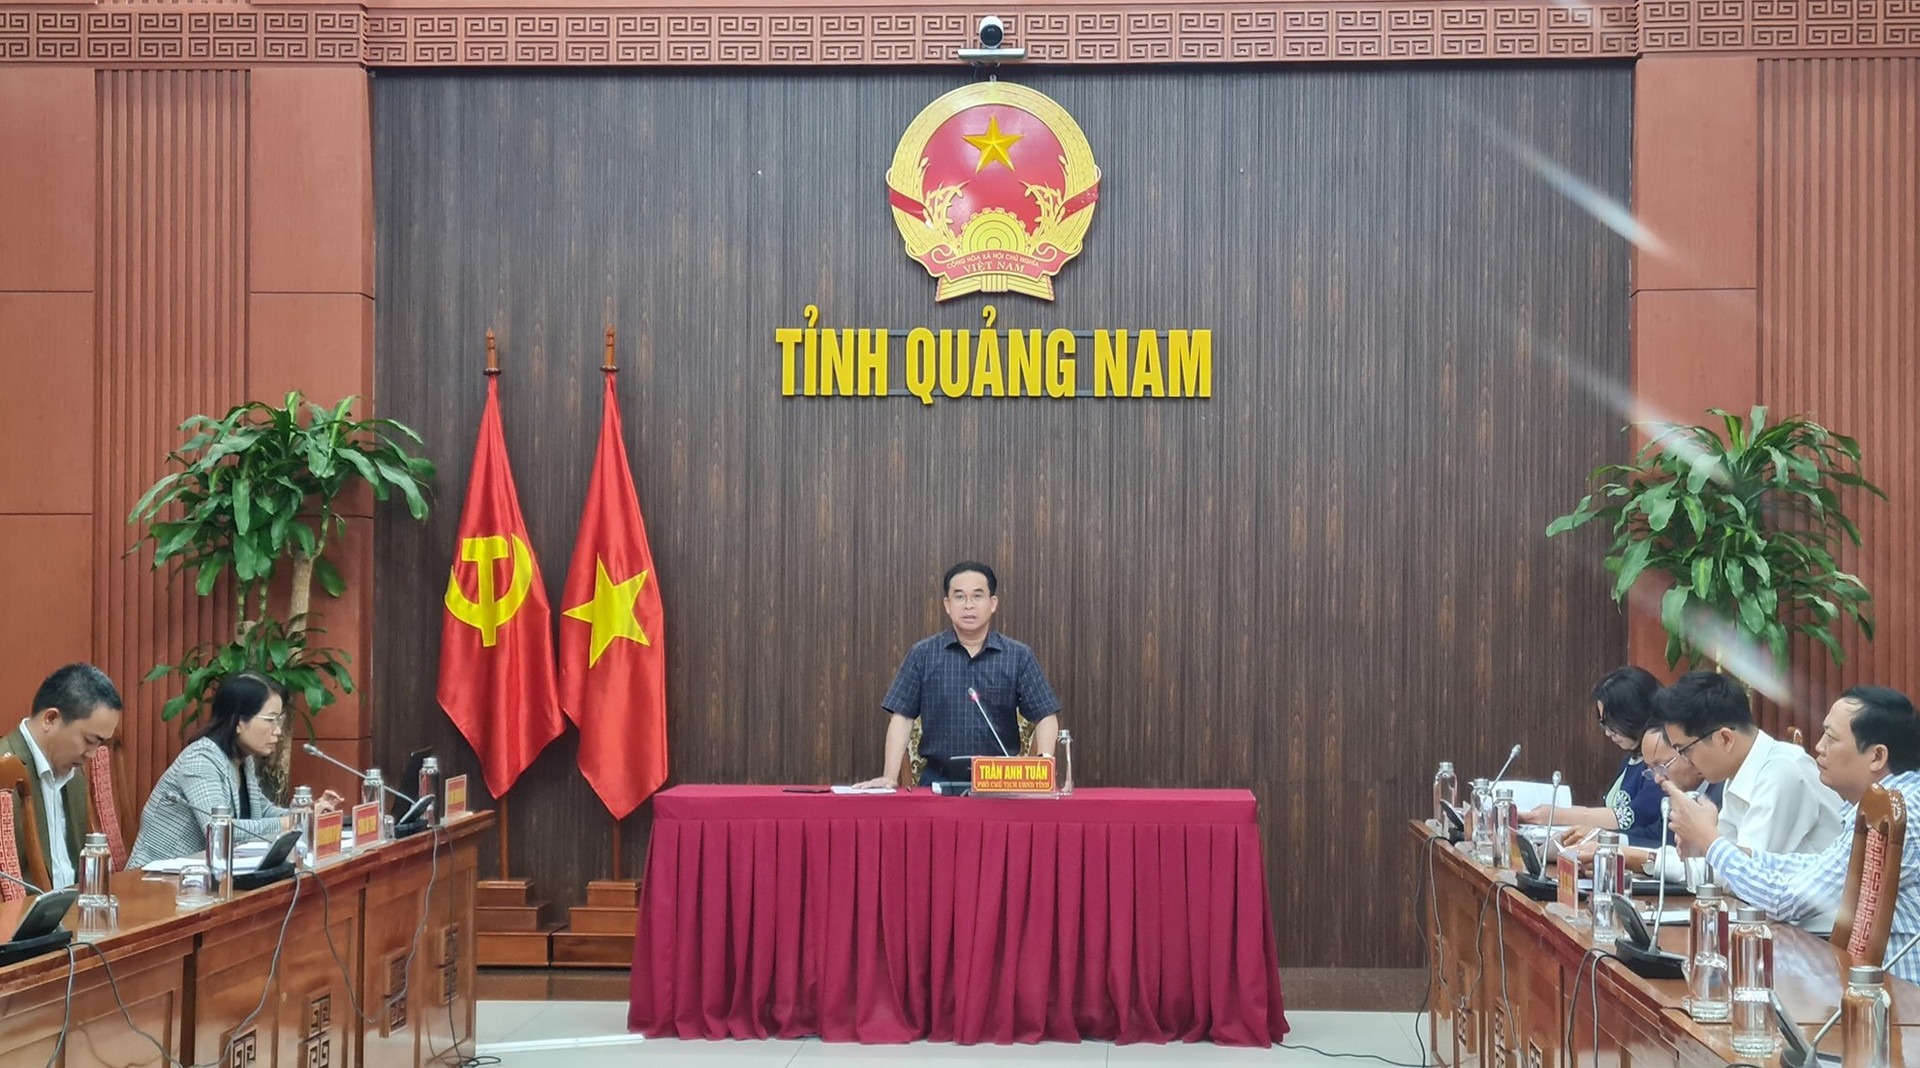 Phó Chủ tịch UBND tỉnh Trần Anh Tuấn chủ trì cuộc họp trực tuyến toàn tỉnh sáng nay. Ảnh: D.L